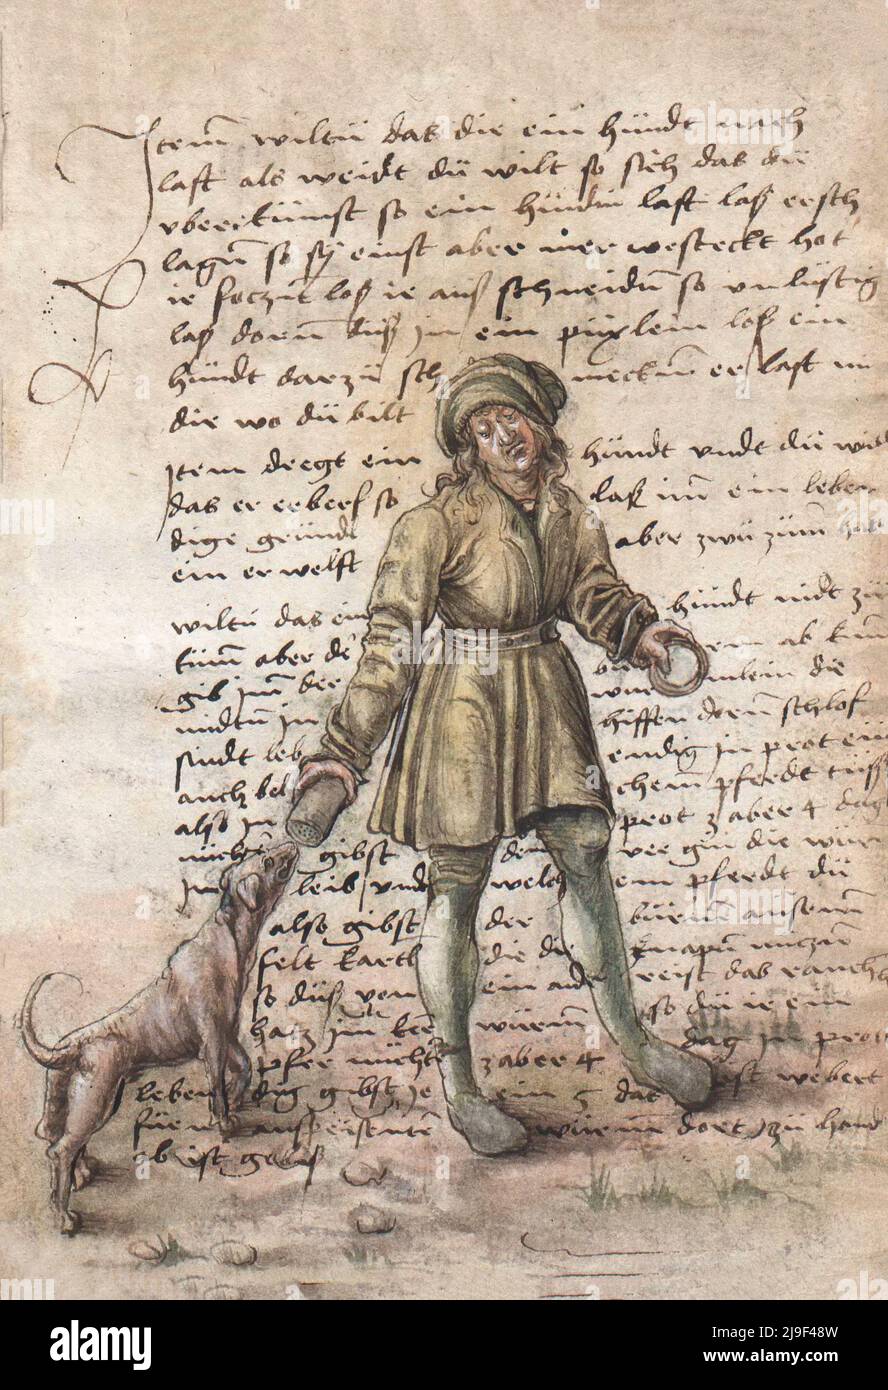 Illustrazione medievale di addestramento del cane. Gli strumenti di Martin Löffelholz (1505) Löffelholtz Codex. Illustrazioni e descrizioni di tutti i tipi di mano a. Foto Stock